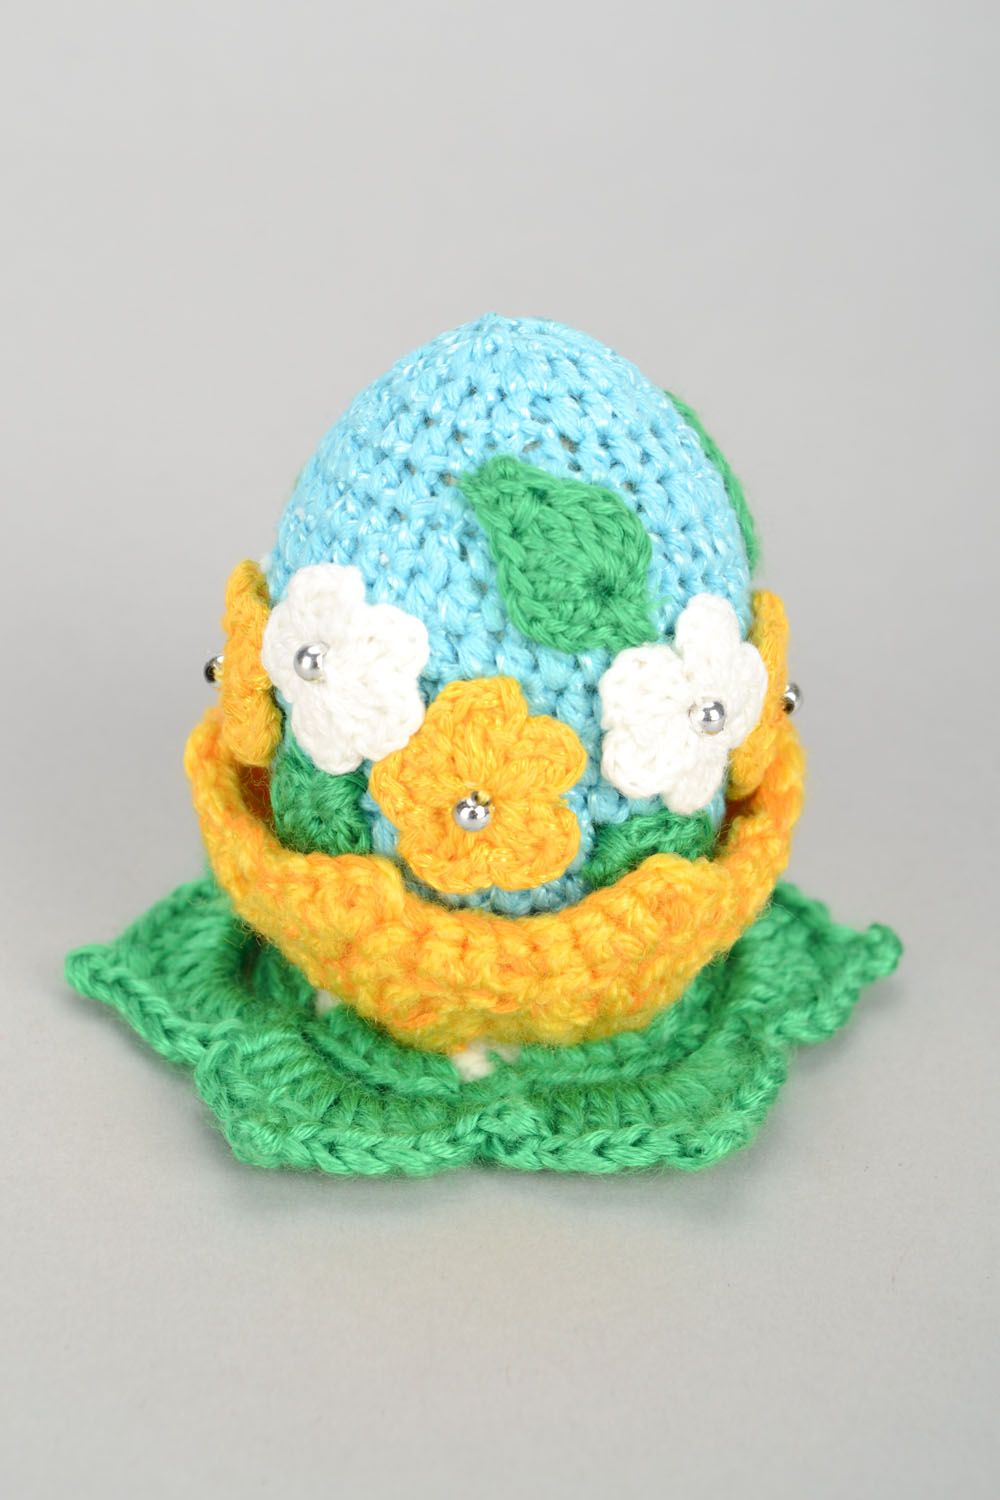 Homemade crocheted Easter egg photo 1